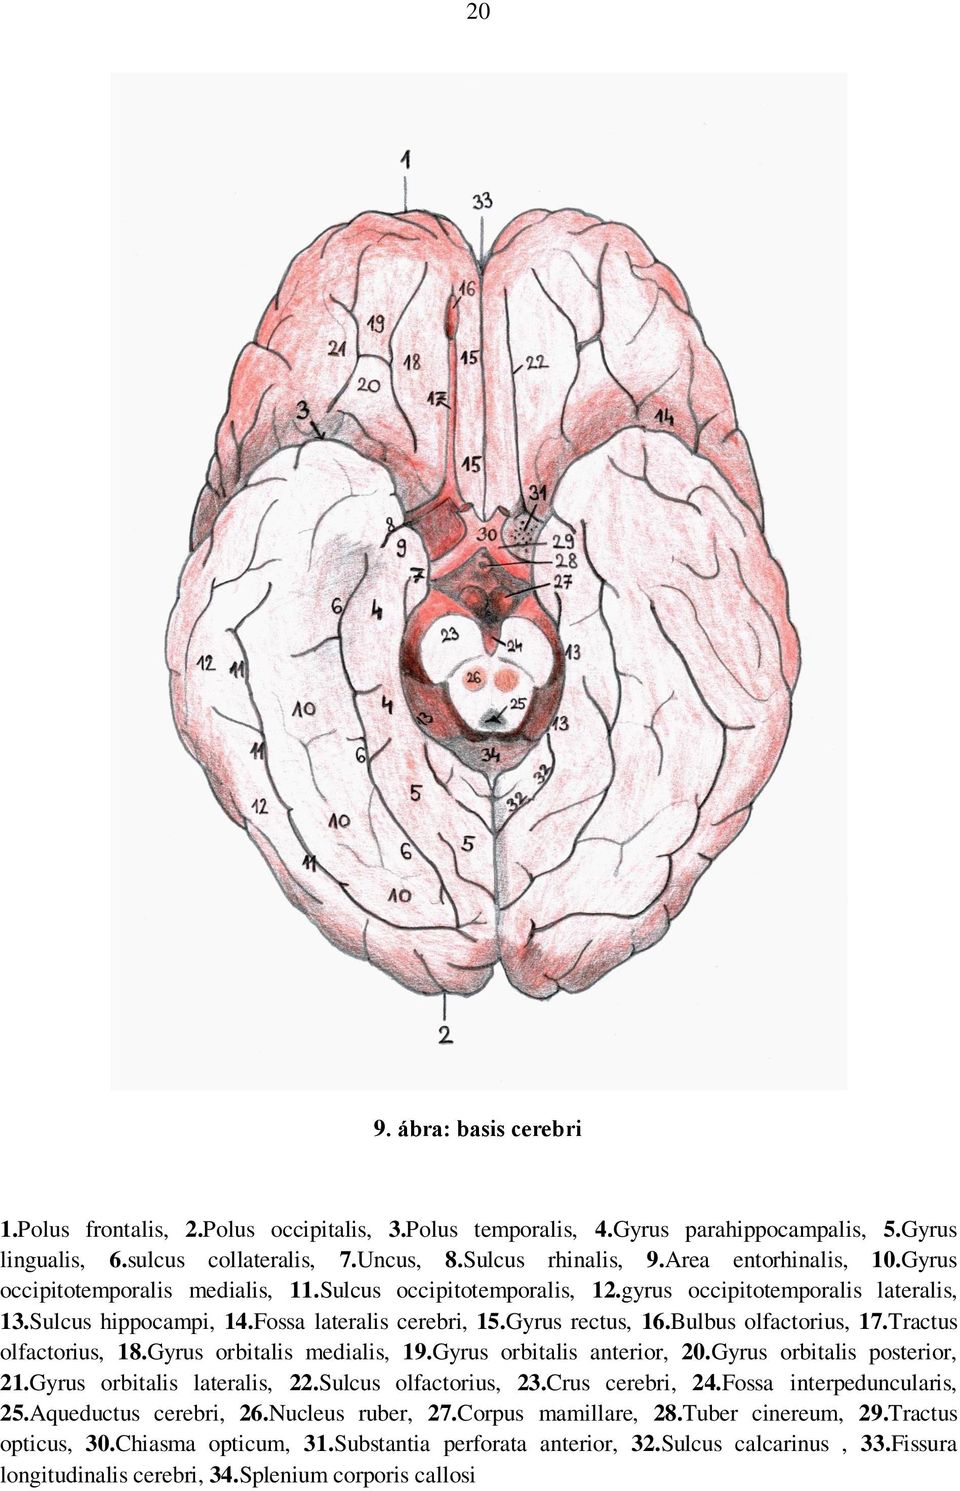 Bulbus olfactorius, 17.Tractus olfactorius, 18.Gyrus orbitalis medialis, 19.Gyrus orbitalis anterior, 20.Gyrus orbitalis posterior, 21.Gyrus orbitalis lateralis, 22.Sulcus olfactorius, 23.